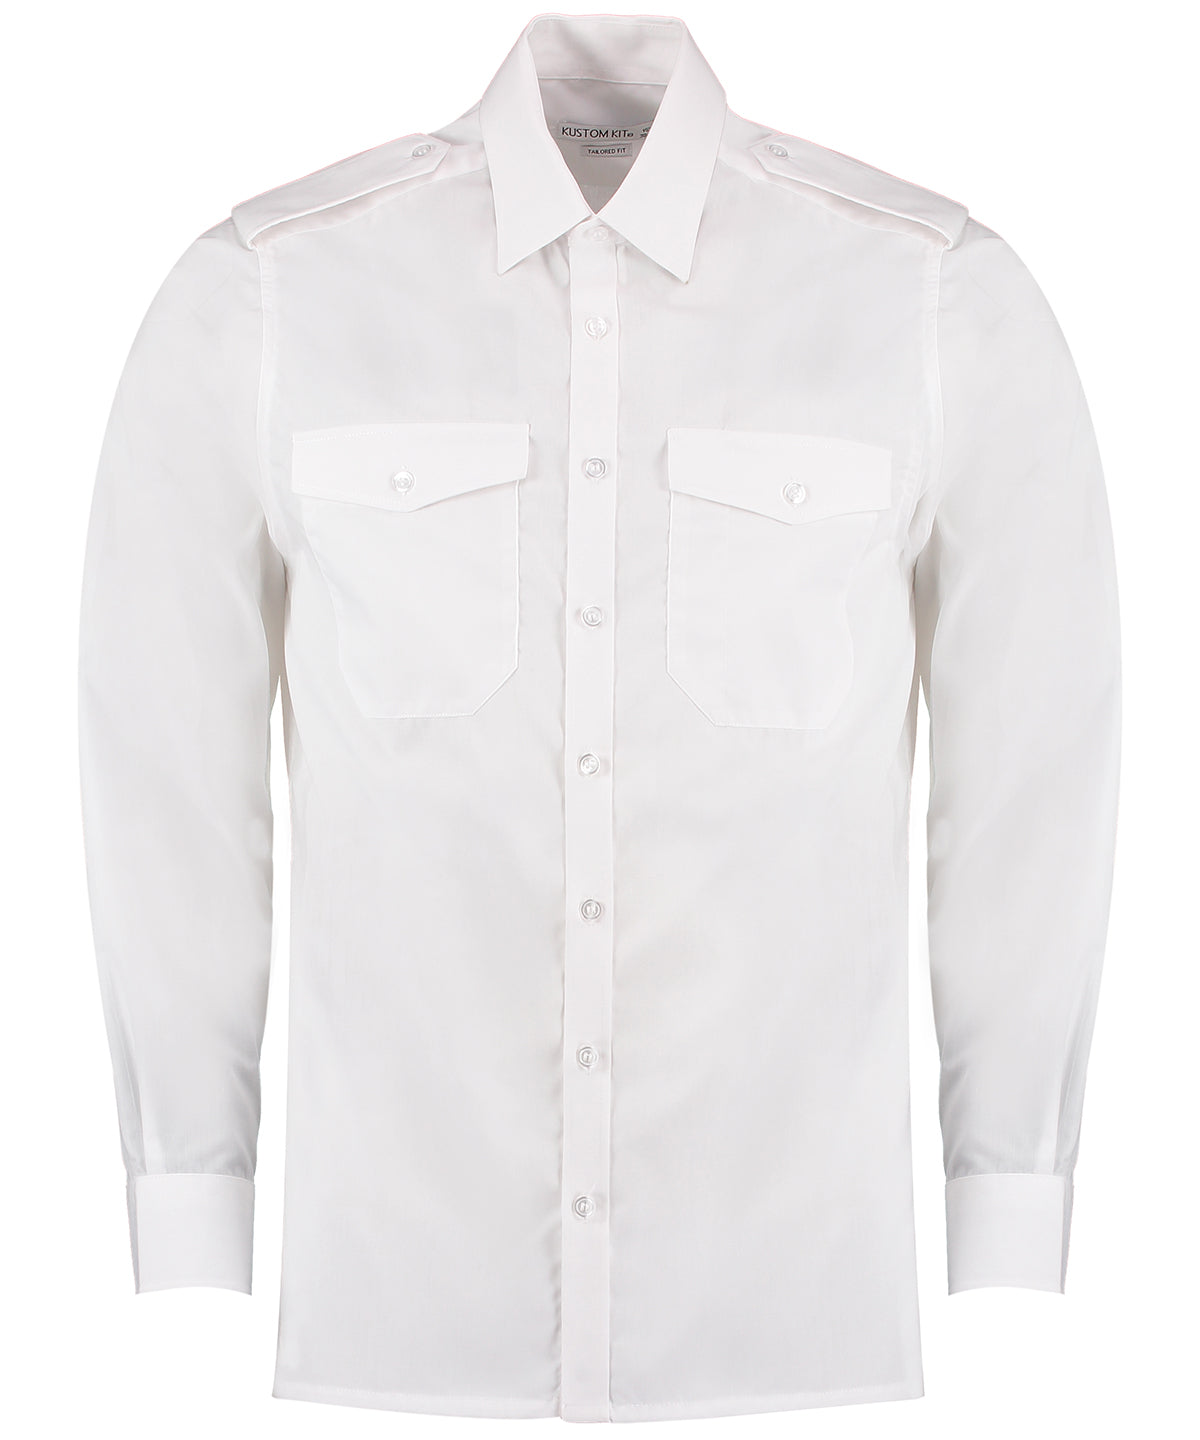 Bolir - Pilot Shirt Long Sleeved